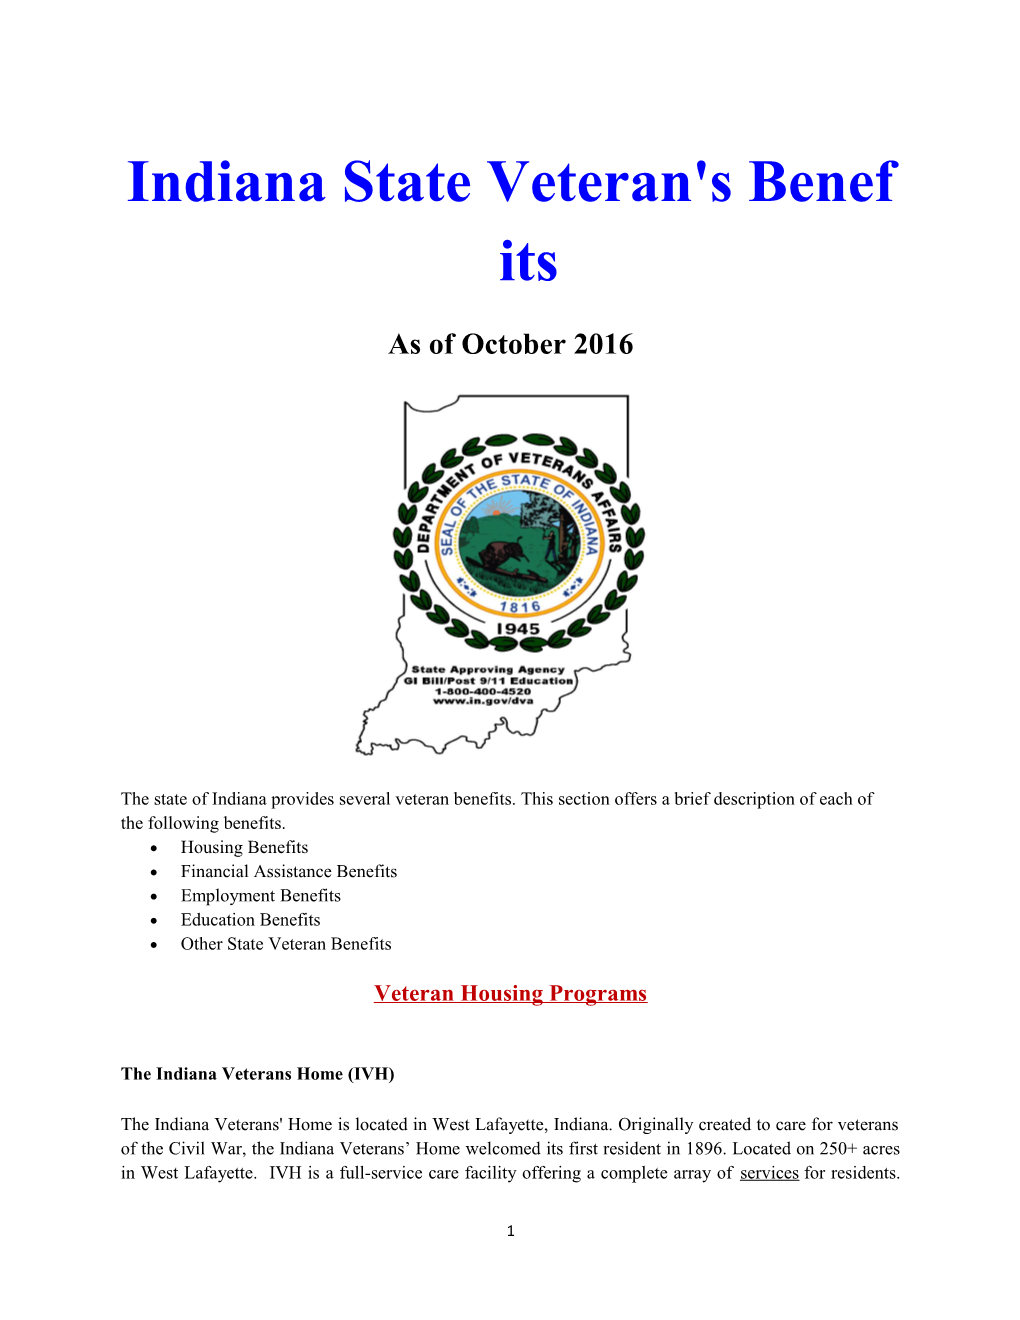 Indiana State Veteran's Benefits